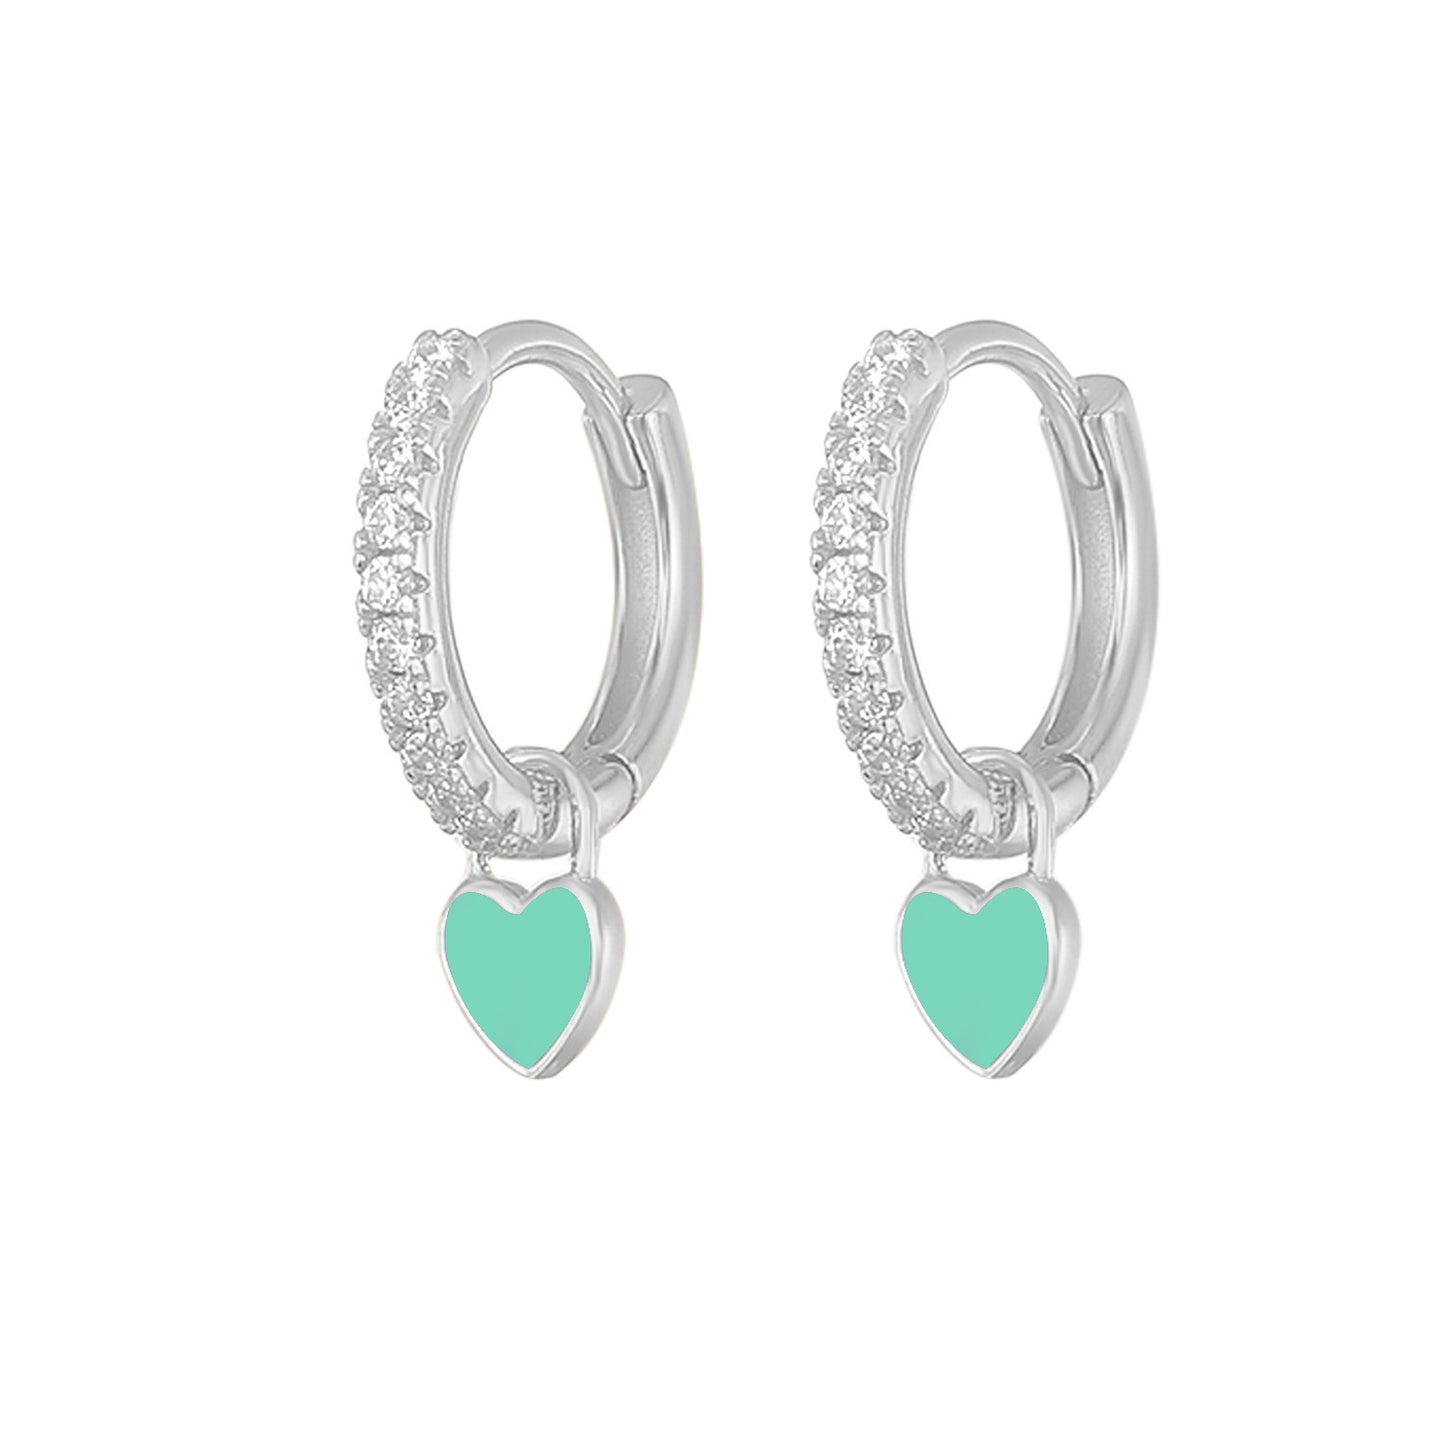 1 Pair Fashion Heart Shape Sterling Silver Plating Zircon Earrings